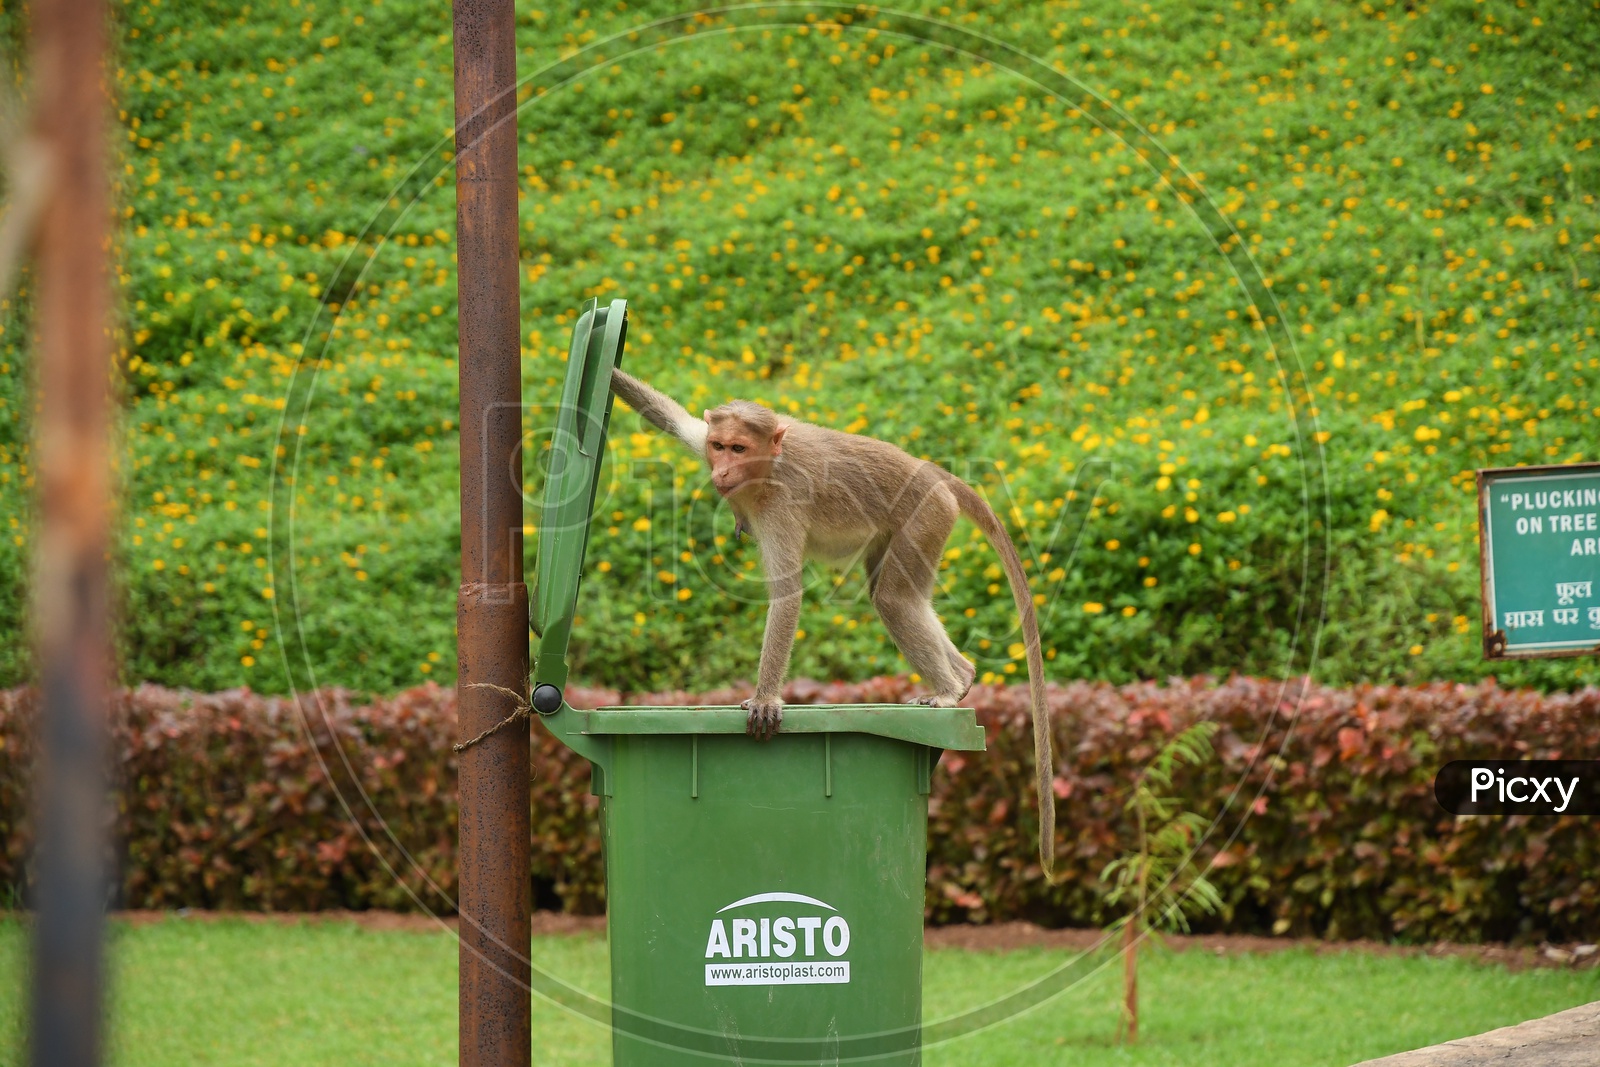 A Monkey on the dust bin